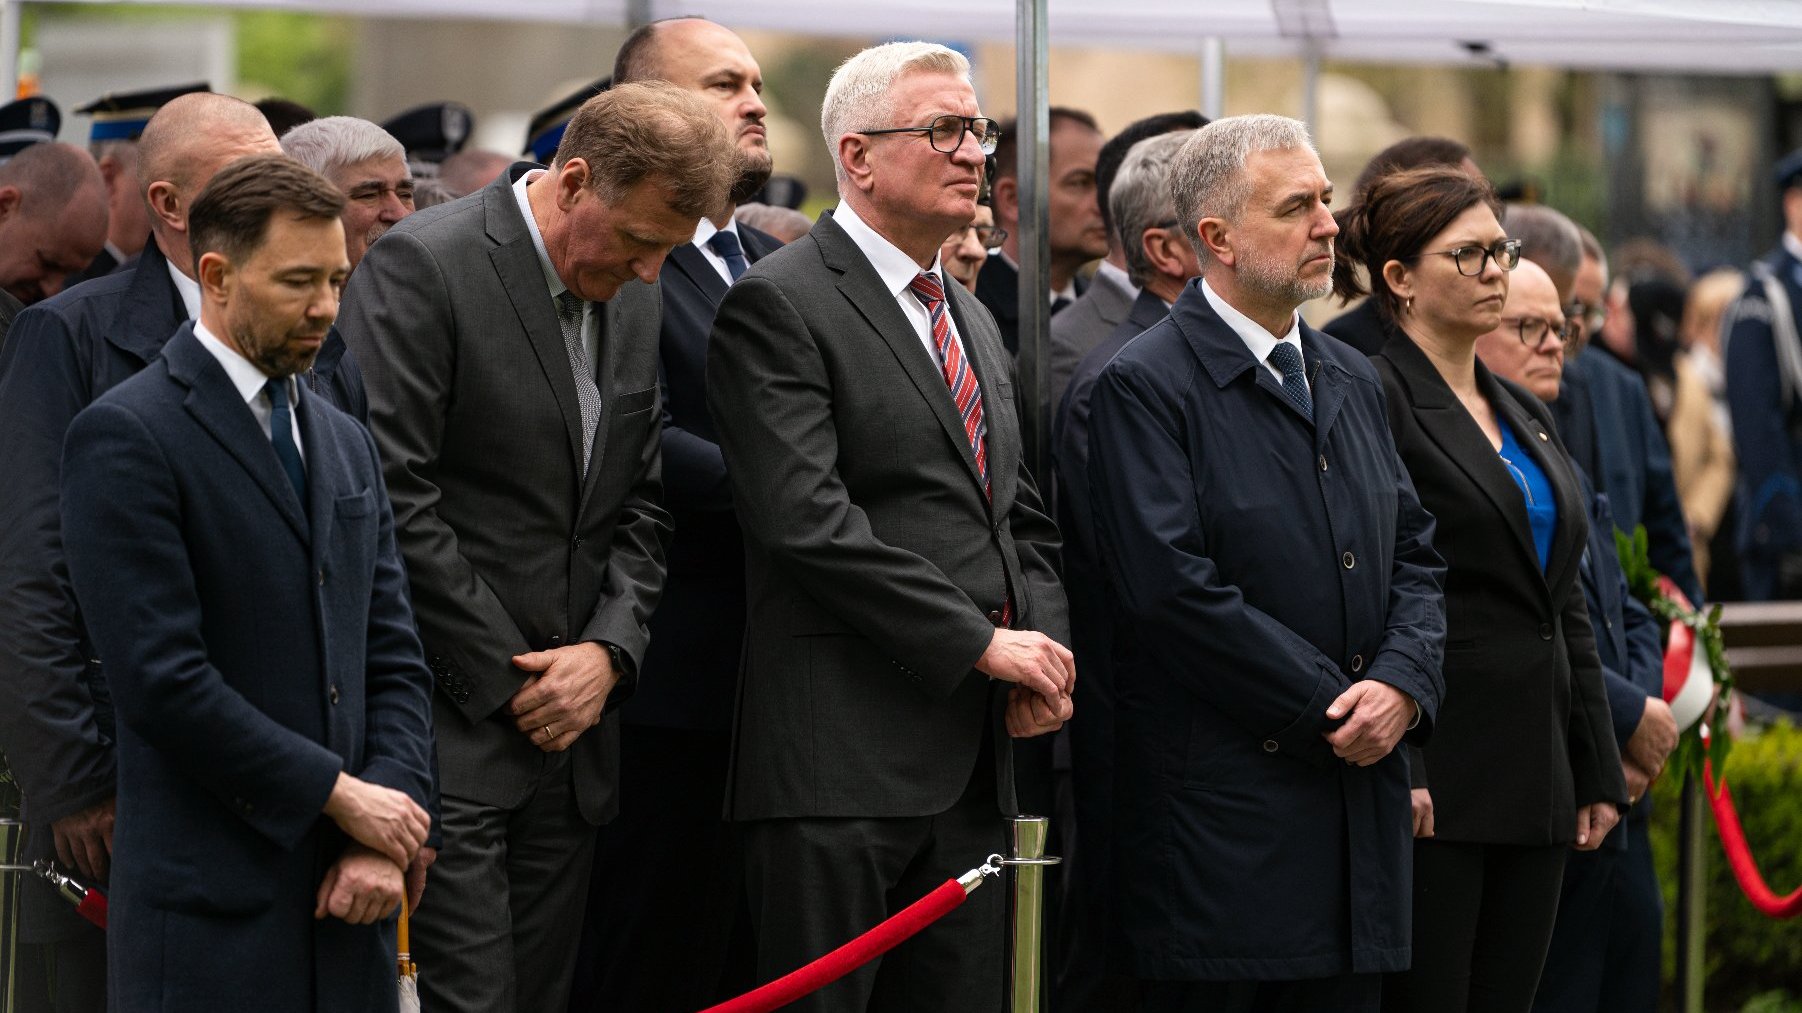 Na zdjęciu samorządowcy stojący w szeregu